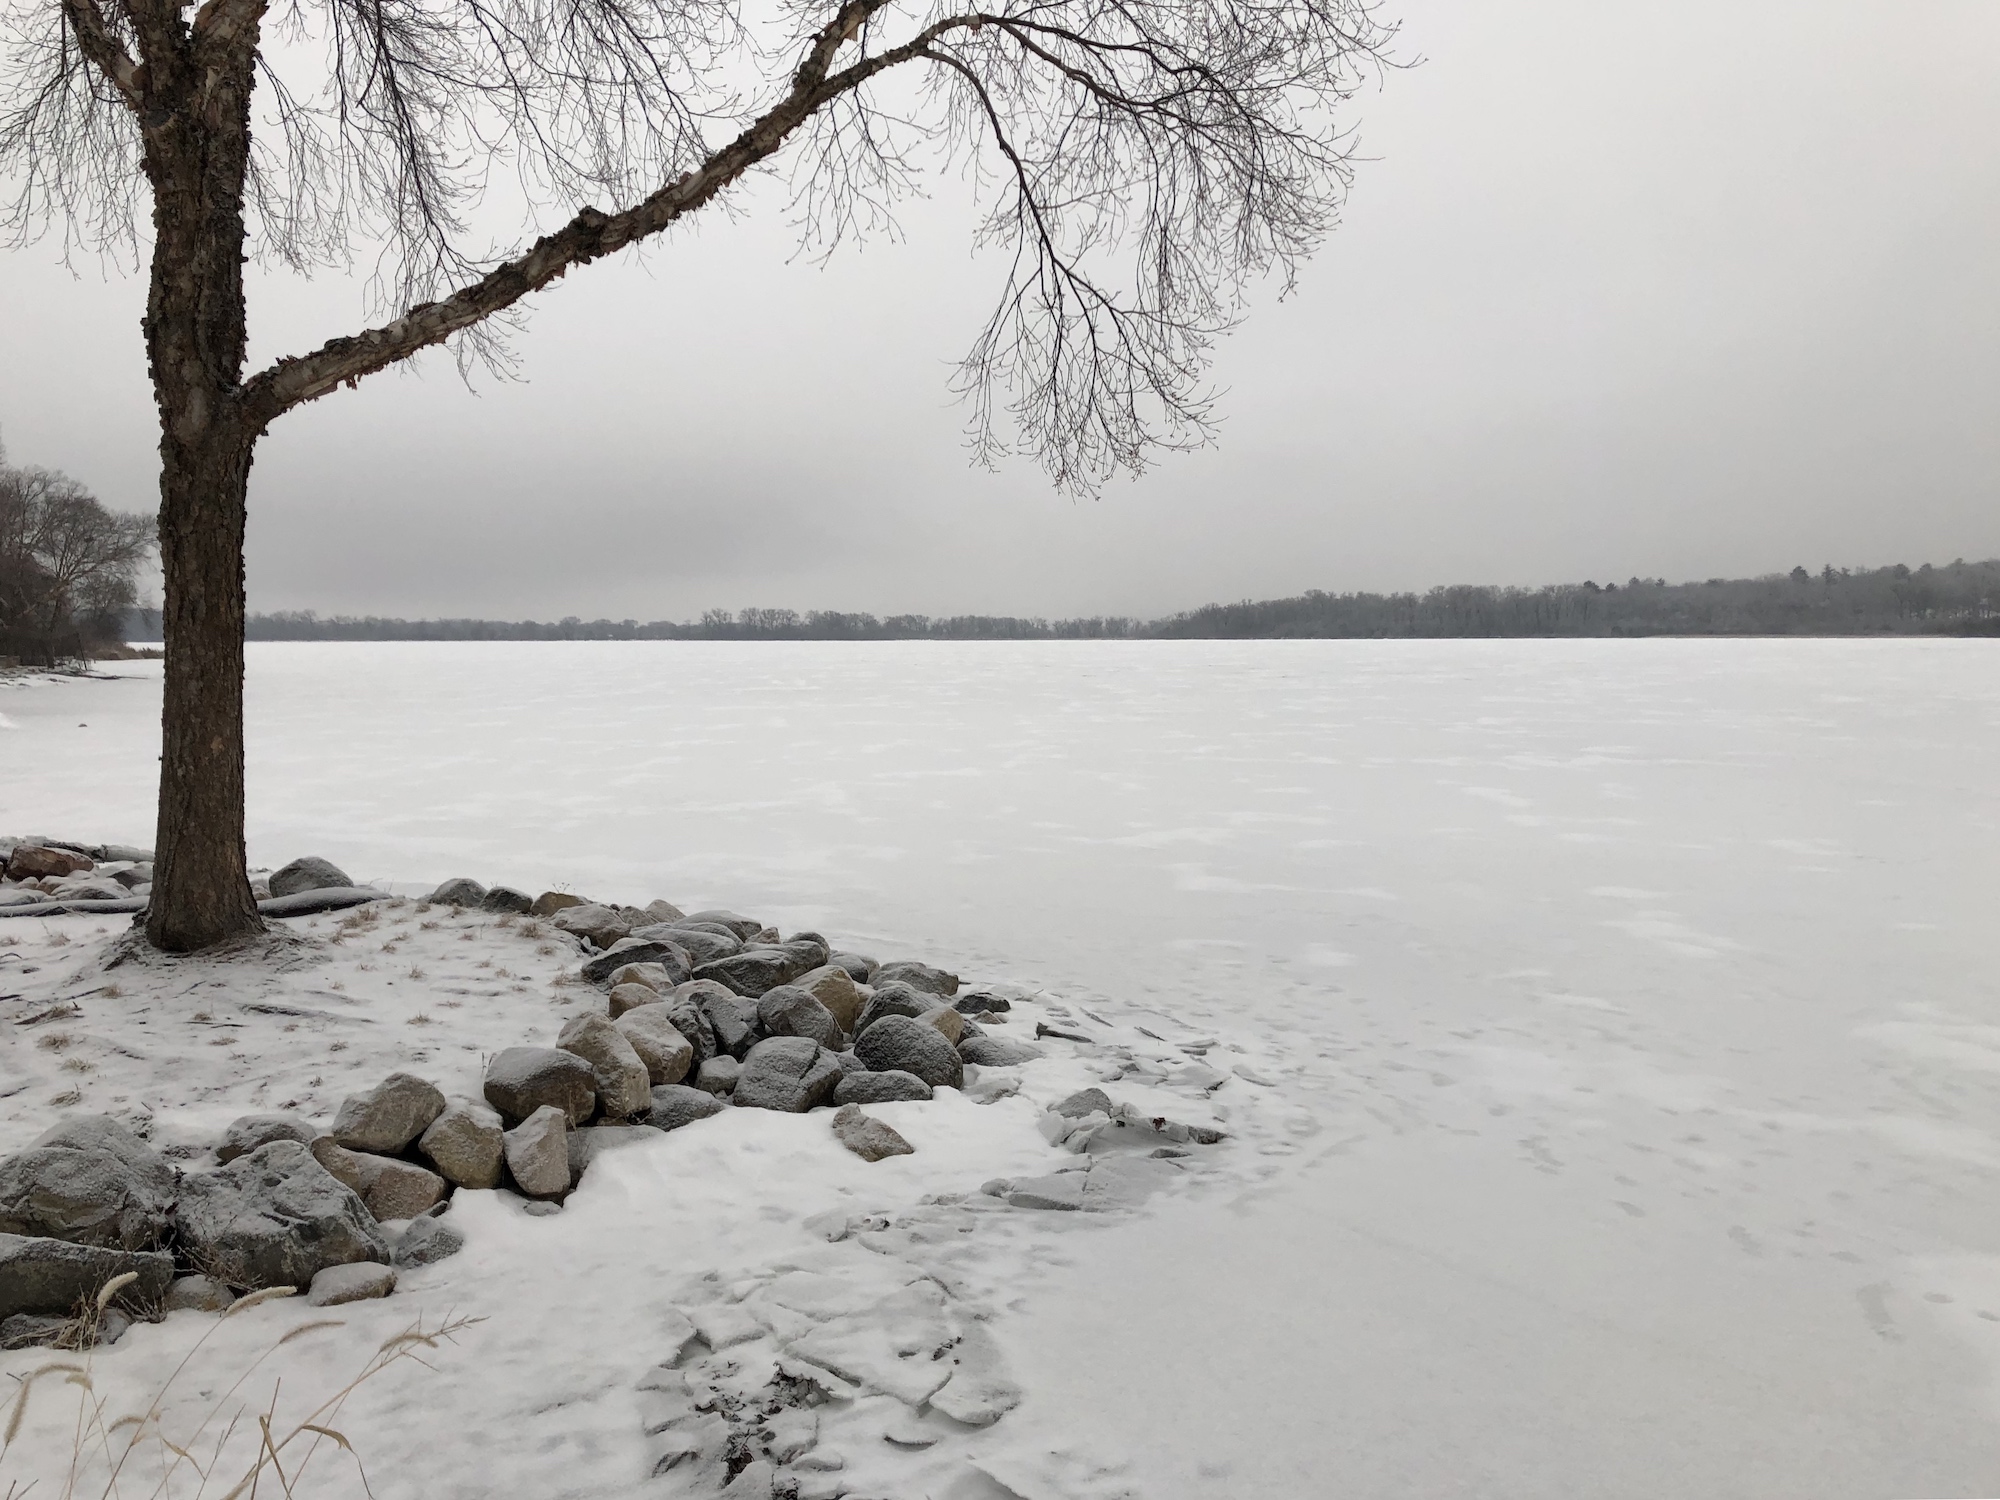 Lake Wingra on February 7, 2019.